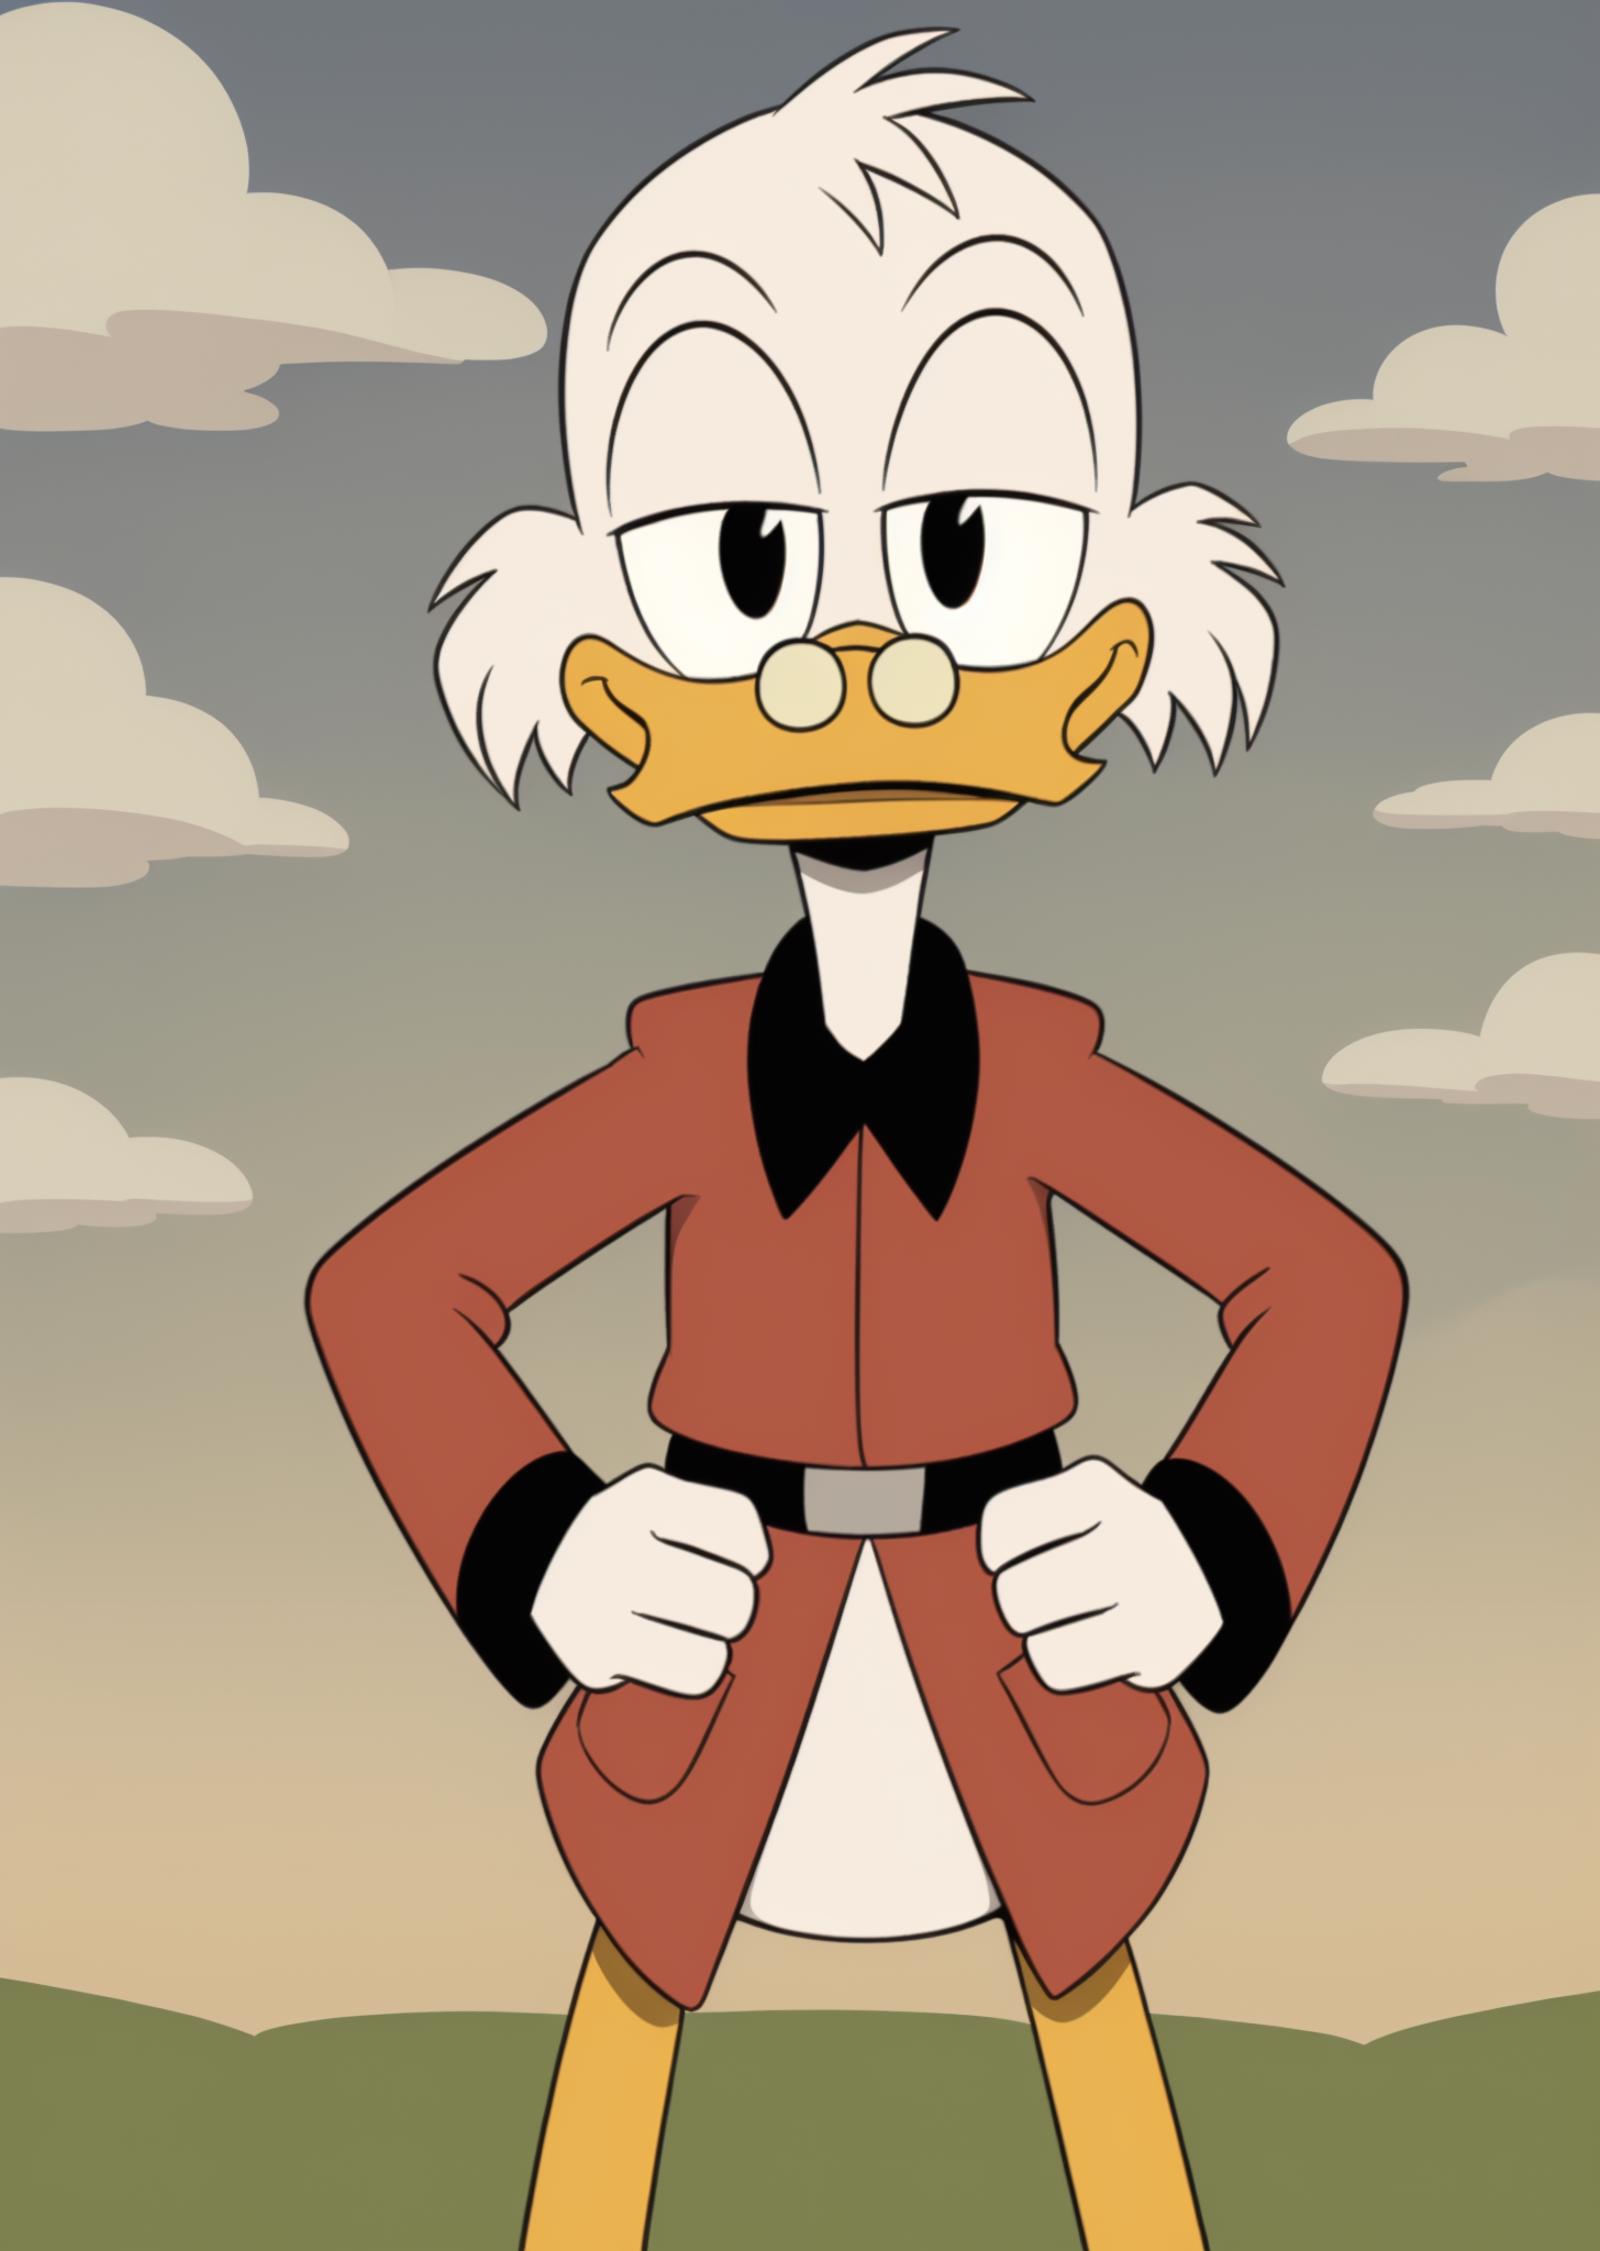 Scrooge McDuck | Ducktales 2017 image by cloud9999